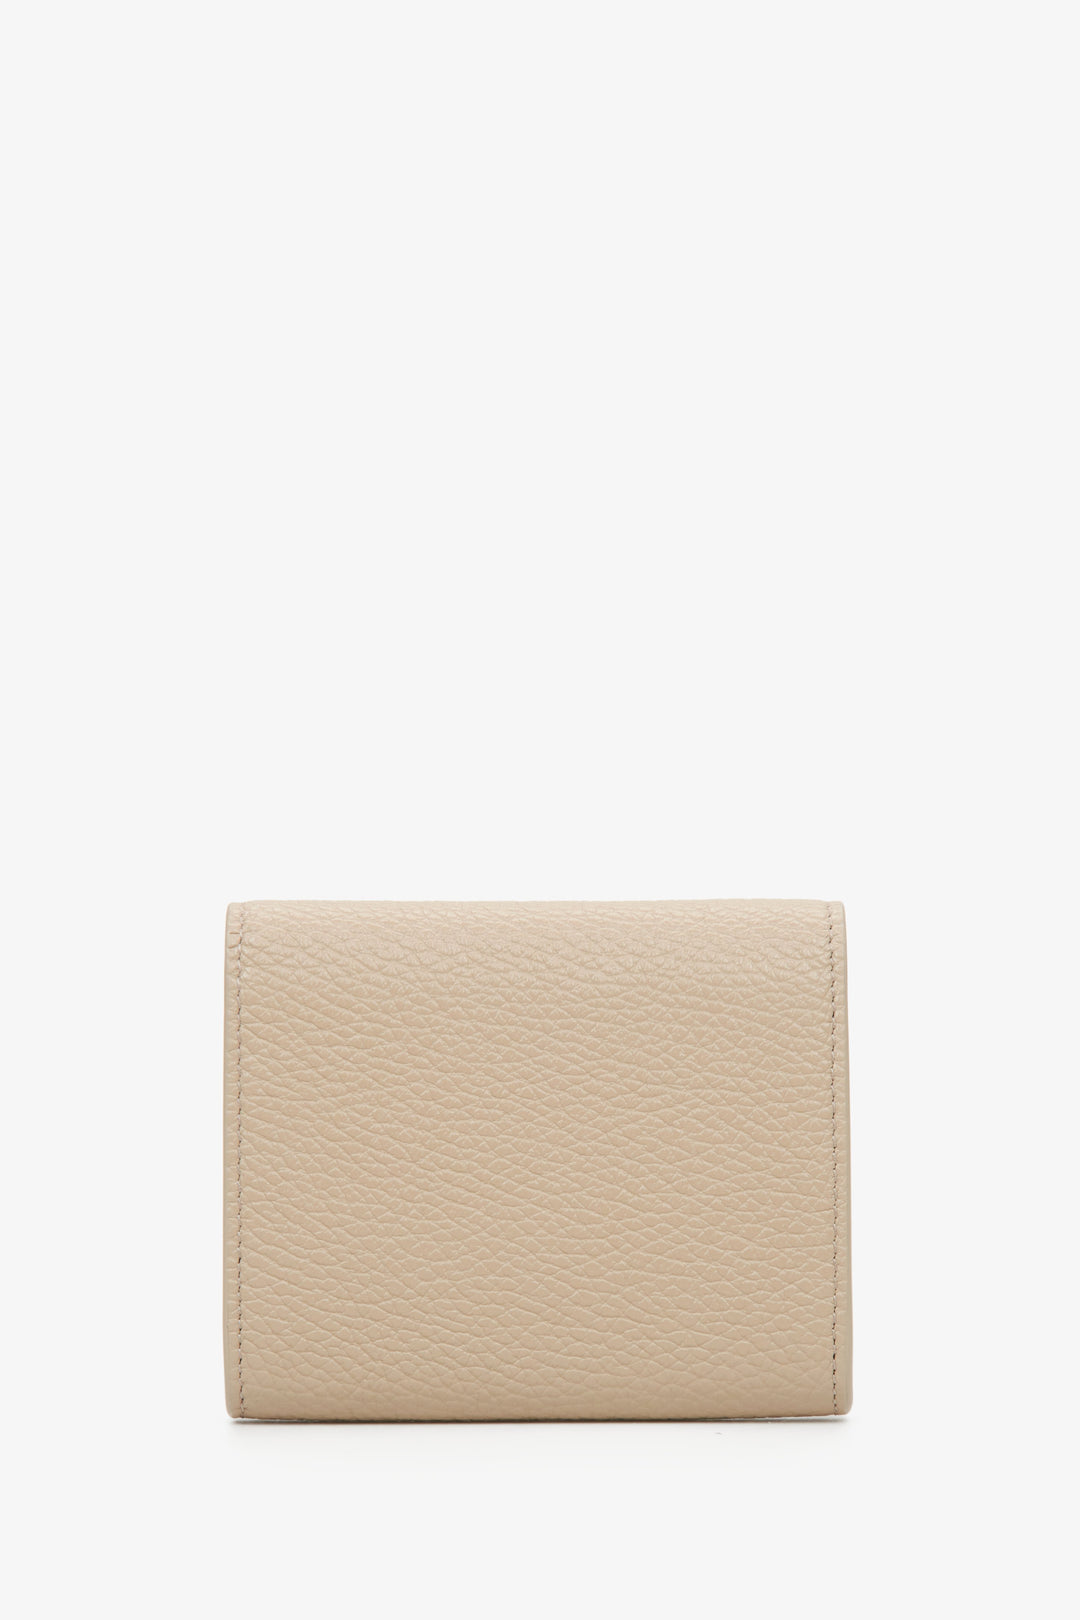 Estro compact beige women's wallet - reverse side.